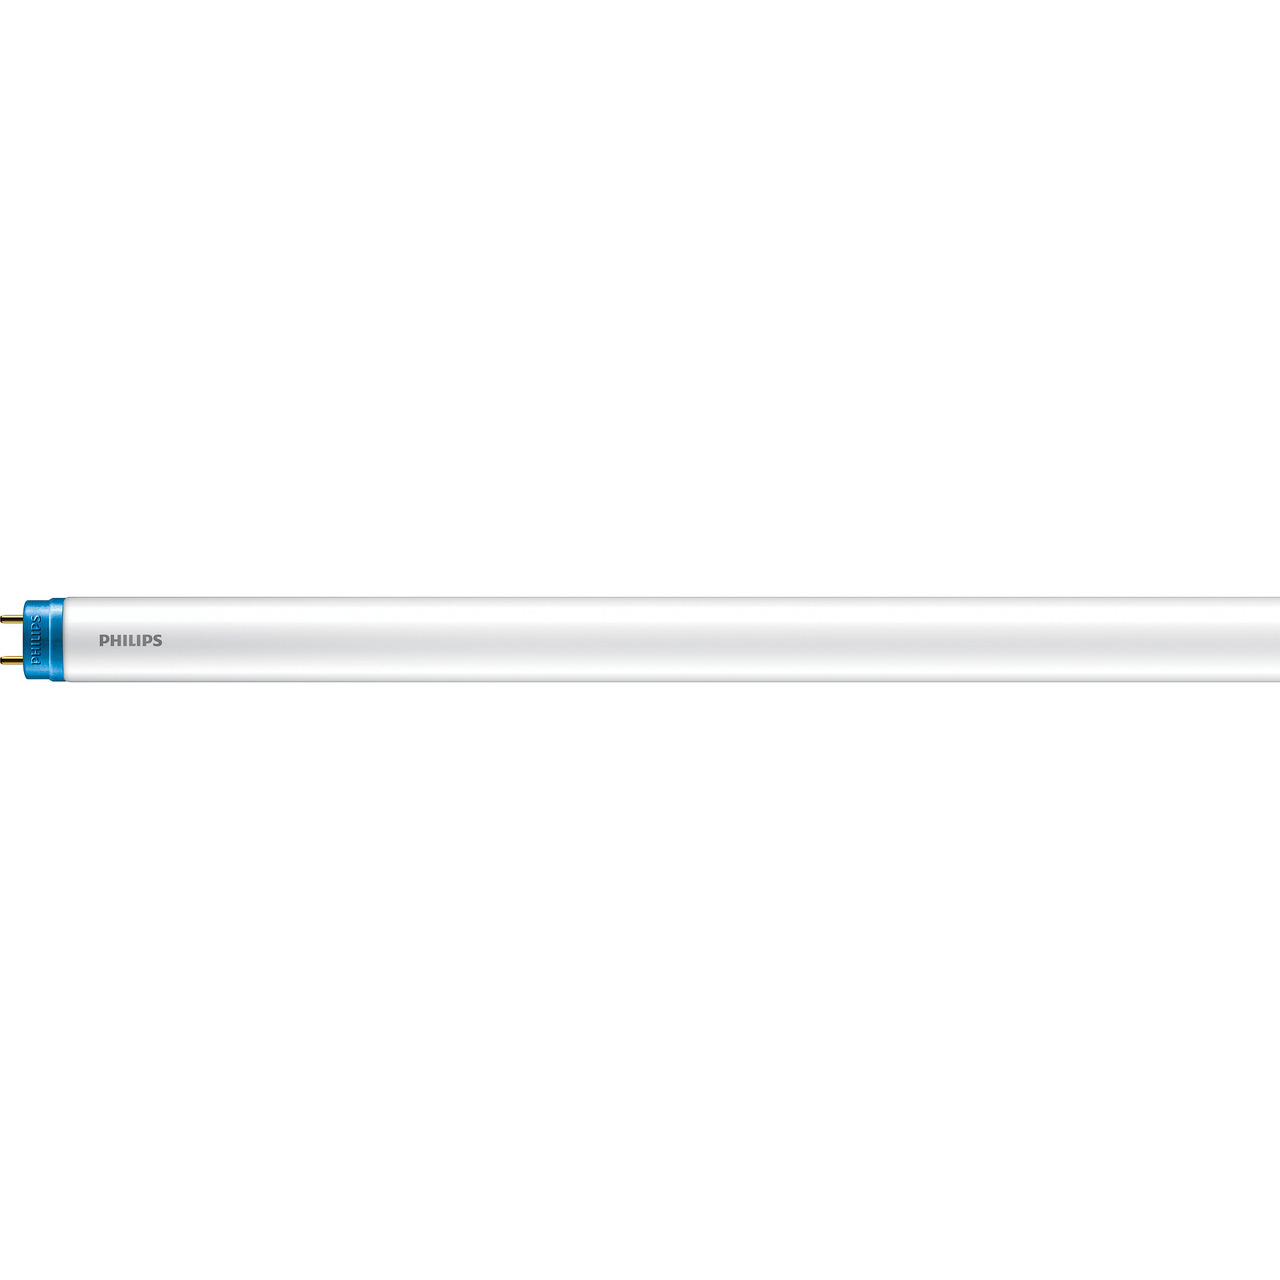 Philips 8-W-T8-LED-R鰄renlampe CorePro LEDtube- 800 lm- 600 mm- kaltweiss (6500 K)- KVG-VVG